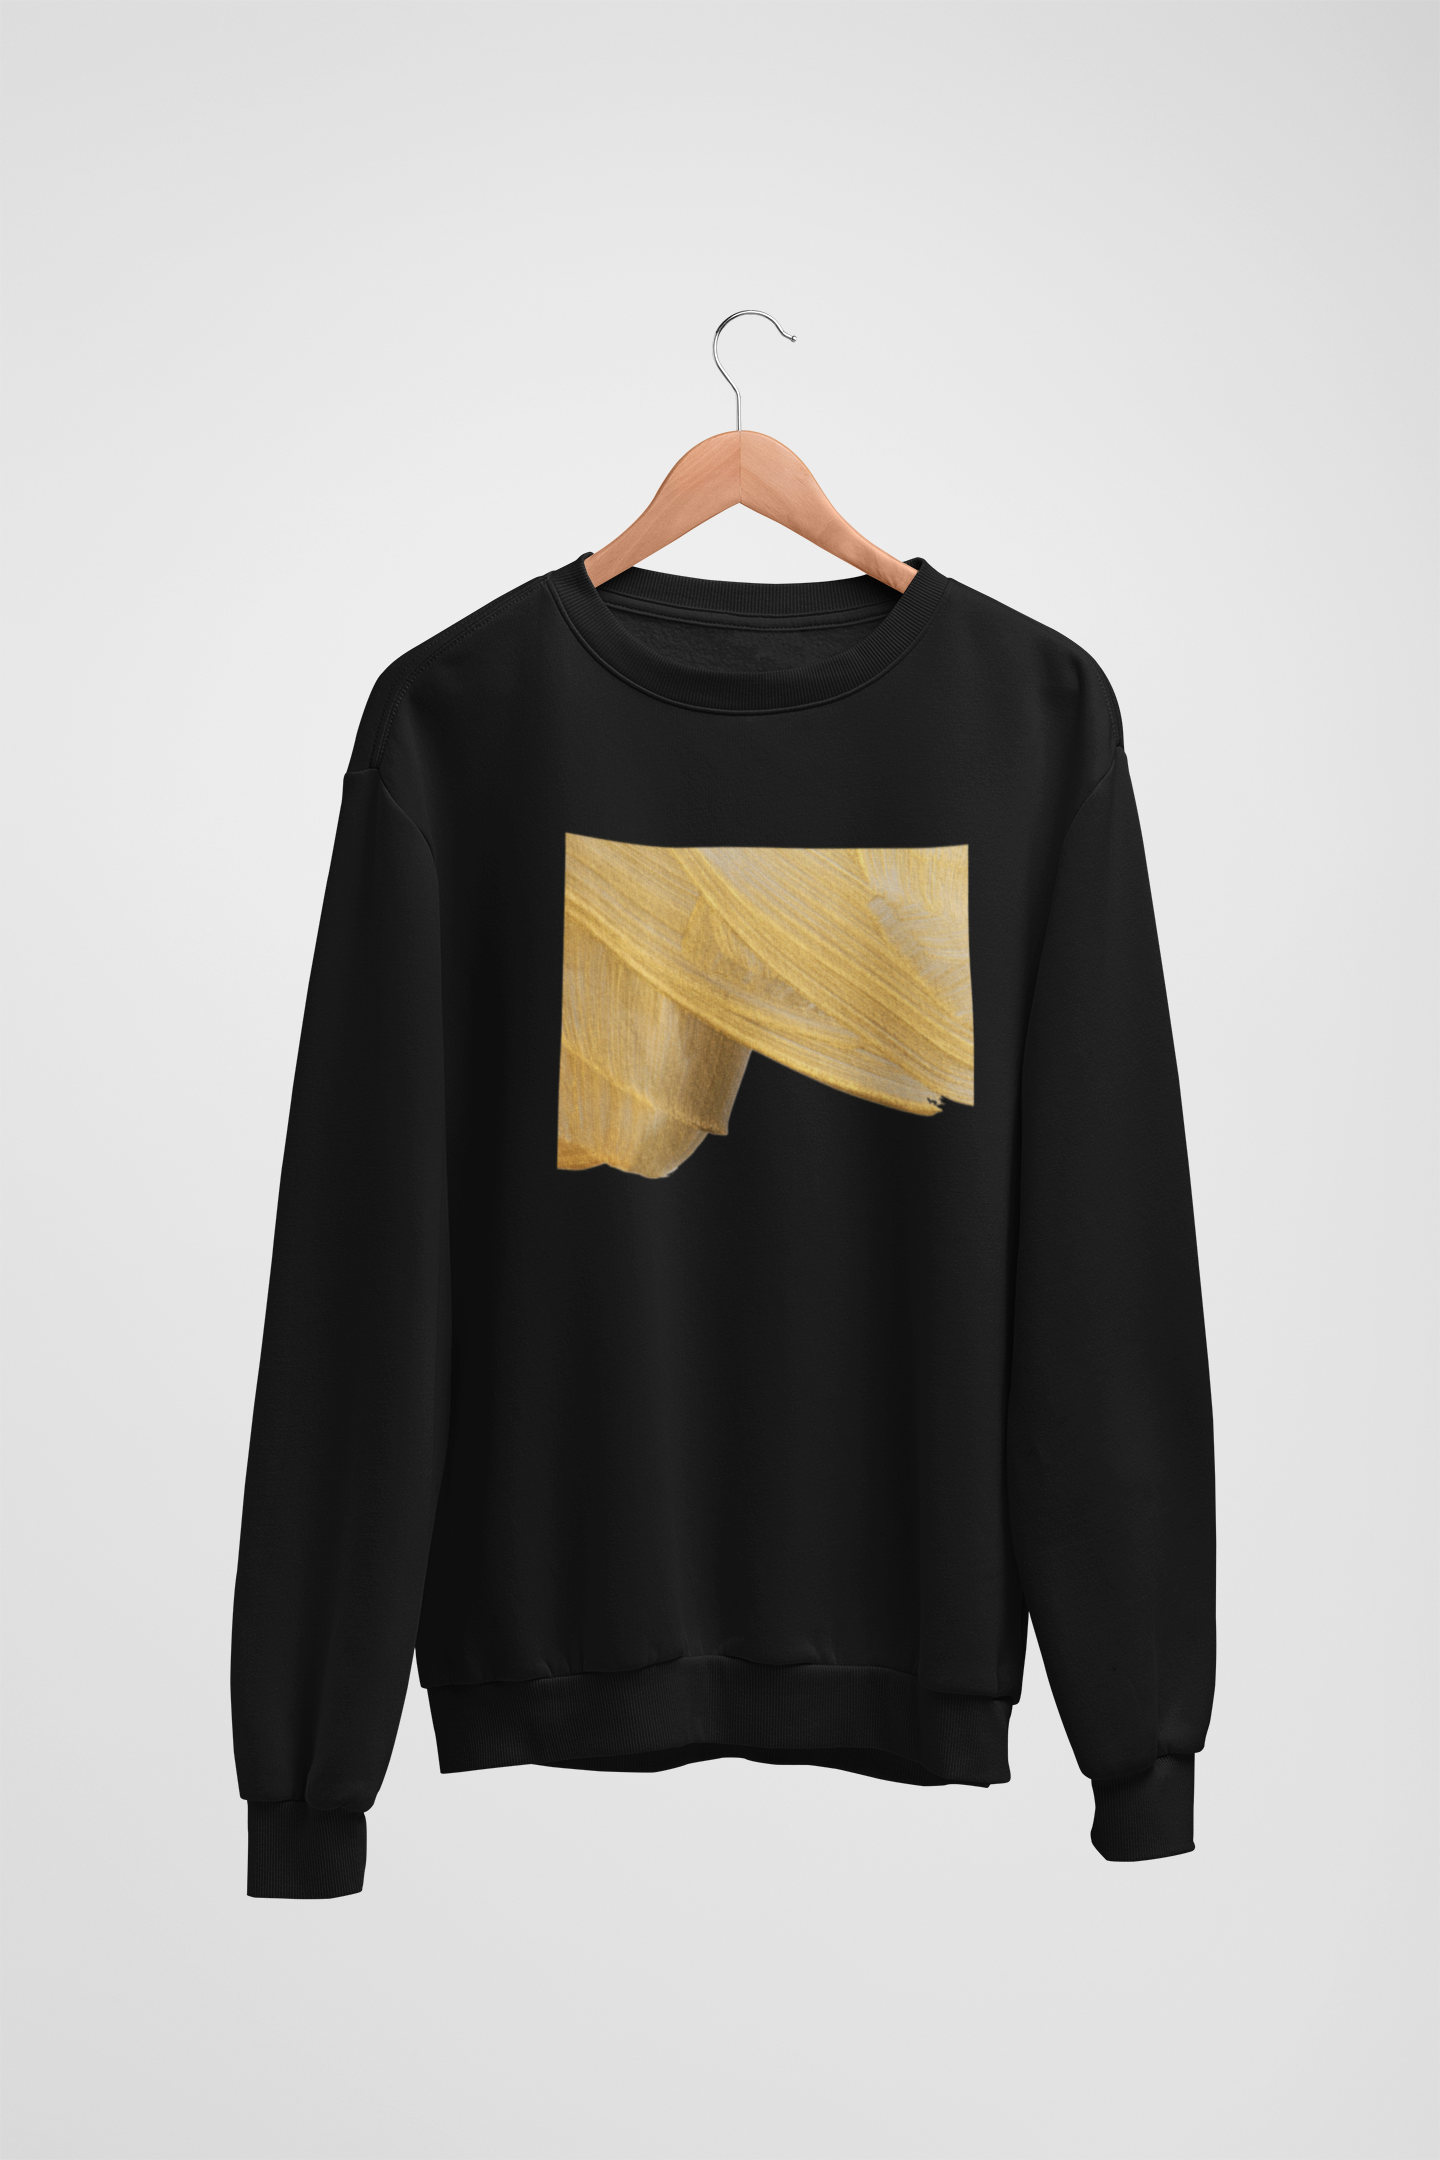 Golden Abstract Black Sweatshirt For Women